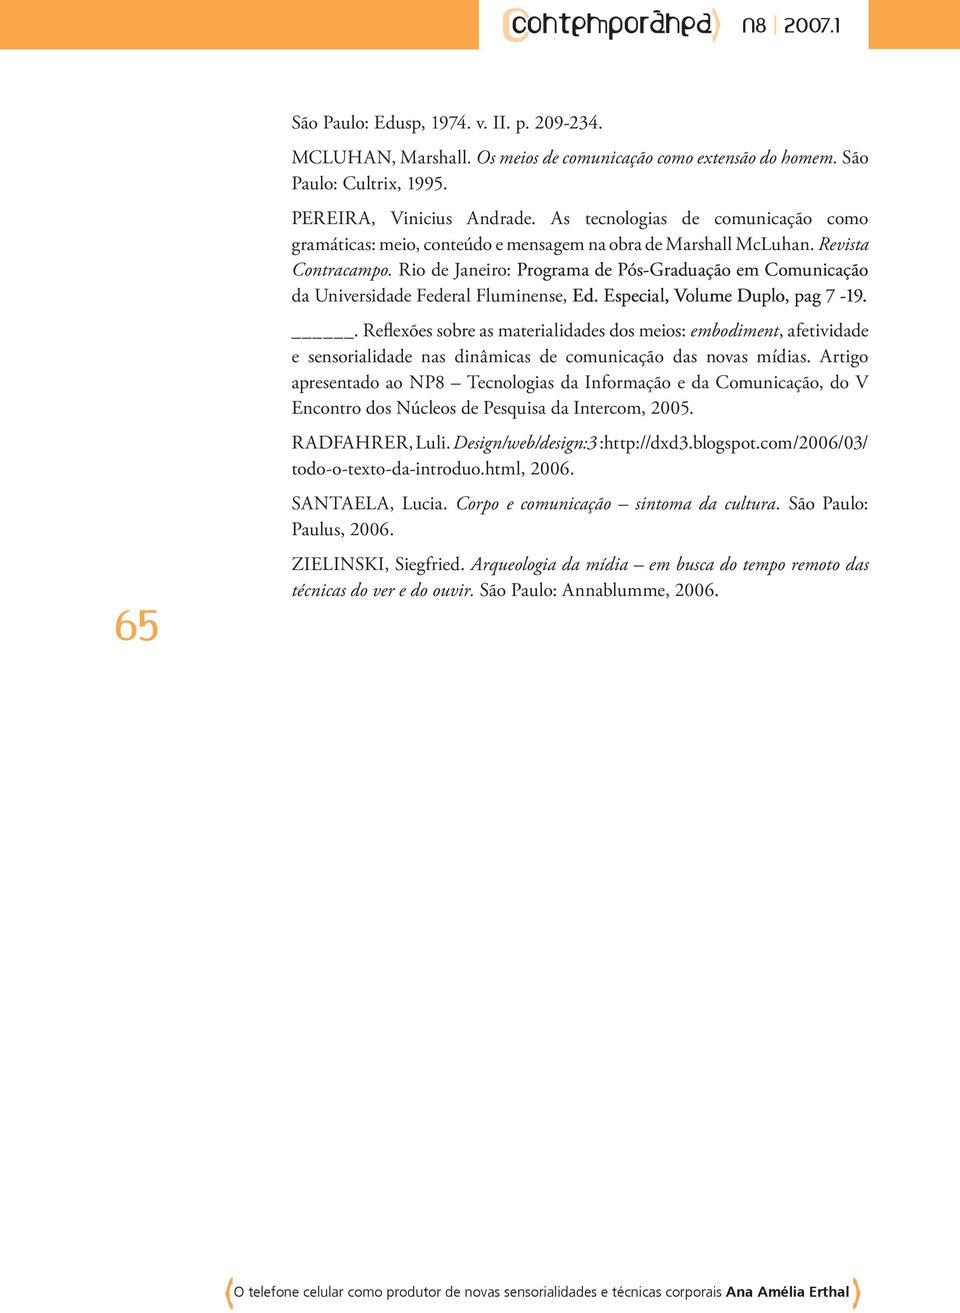 Rio de Janeiro: Programa de Pós-Graduação em Comunicação da Universidade Federal Fluminense, Ed. Especial, Volume Duplo, pag 7-19.